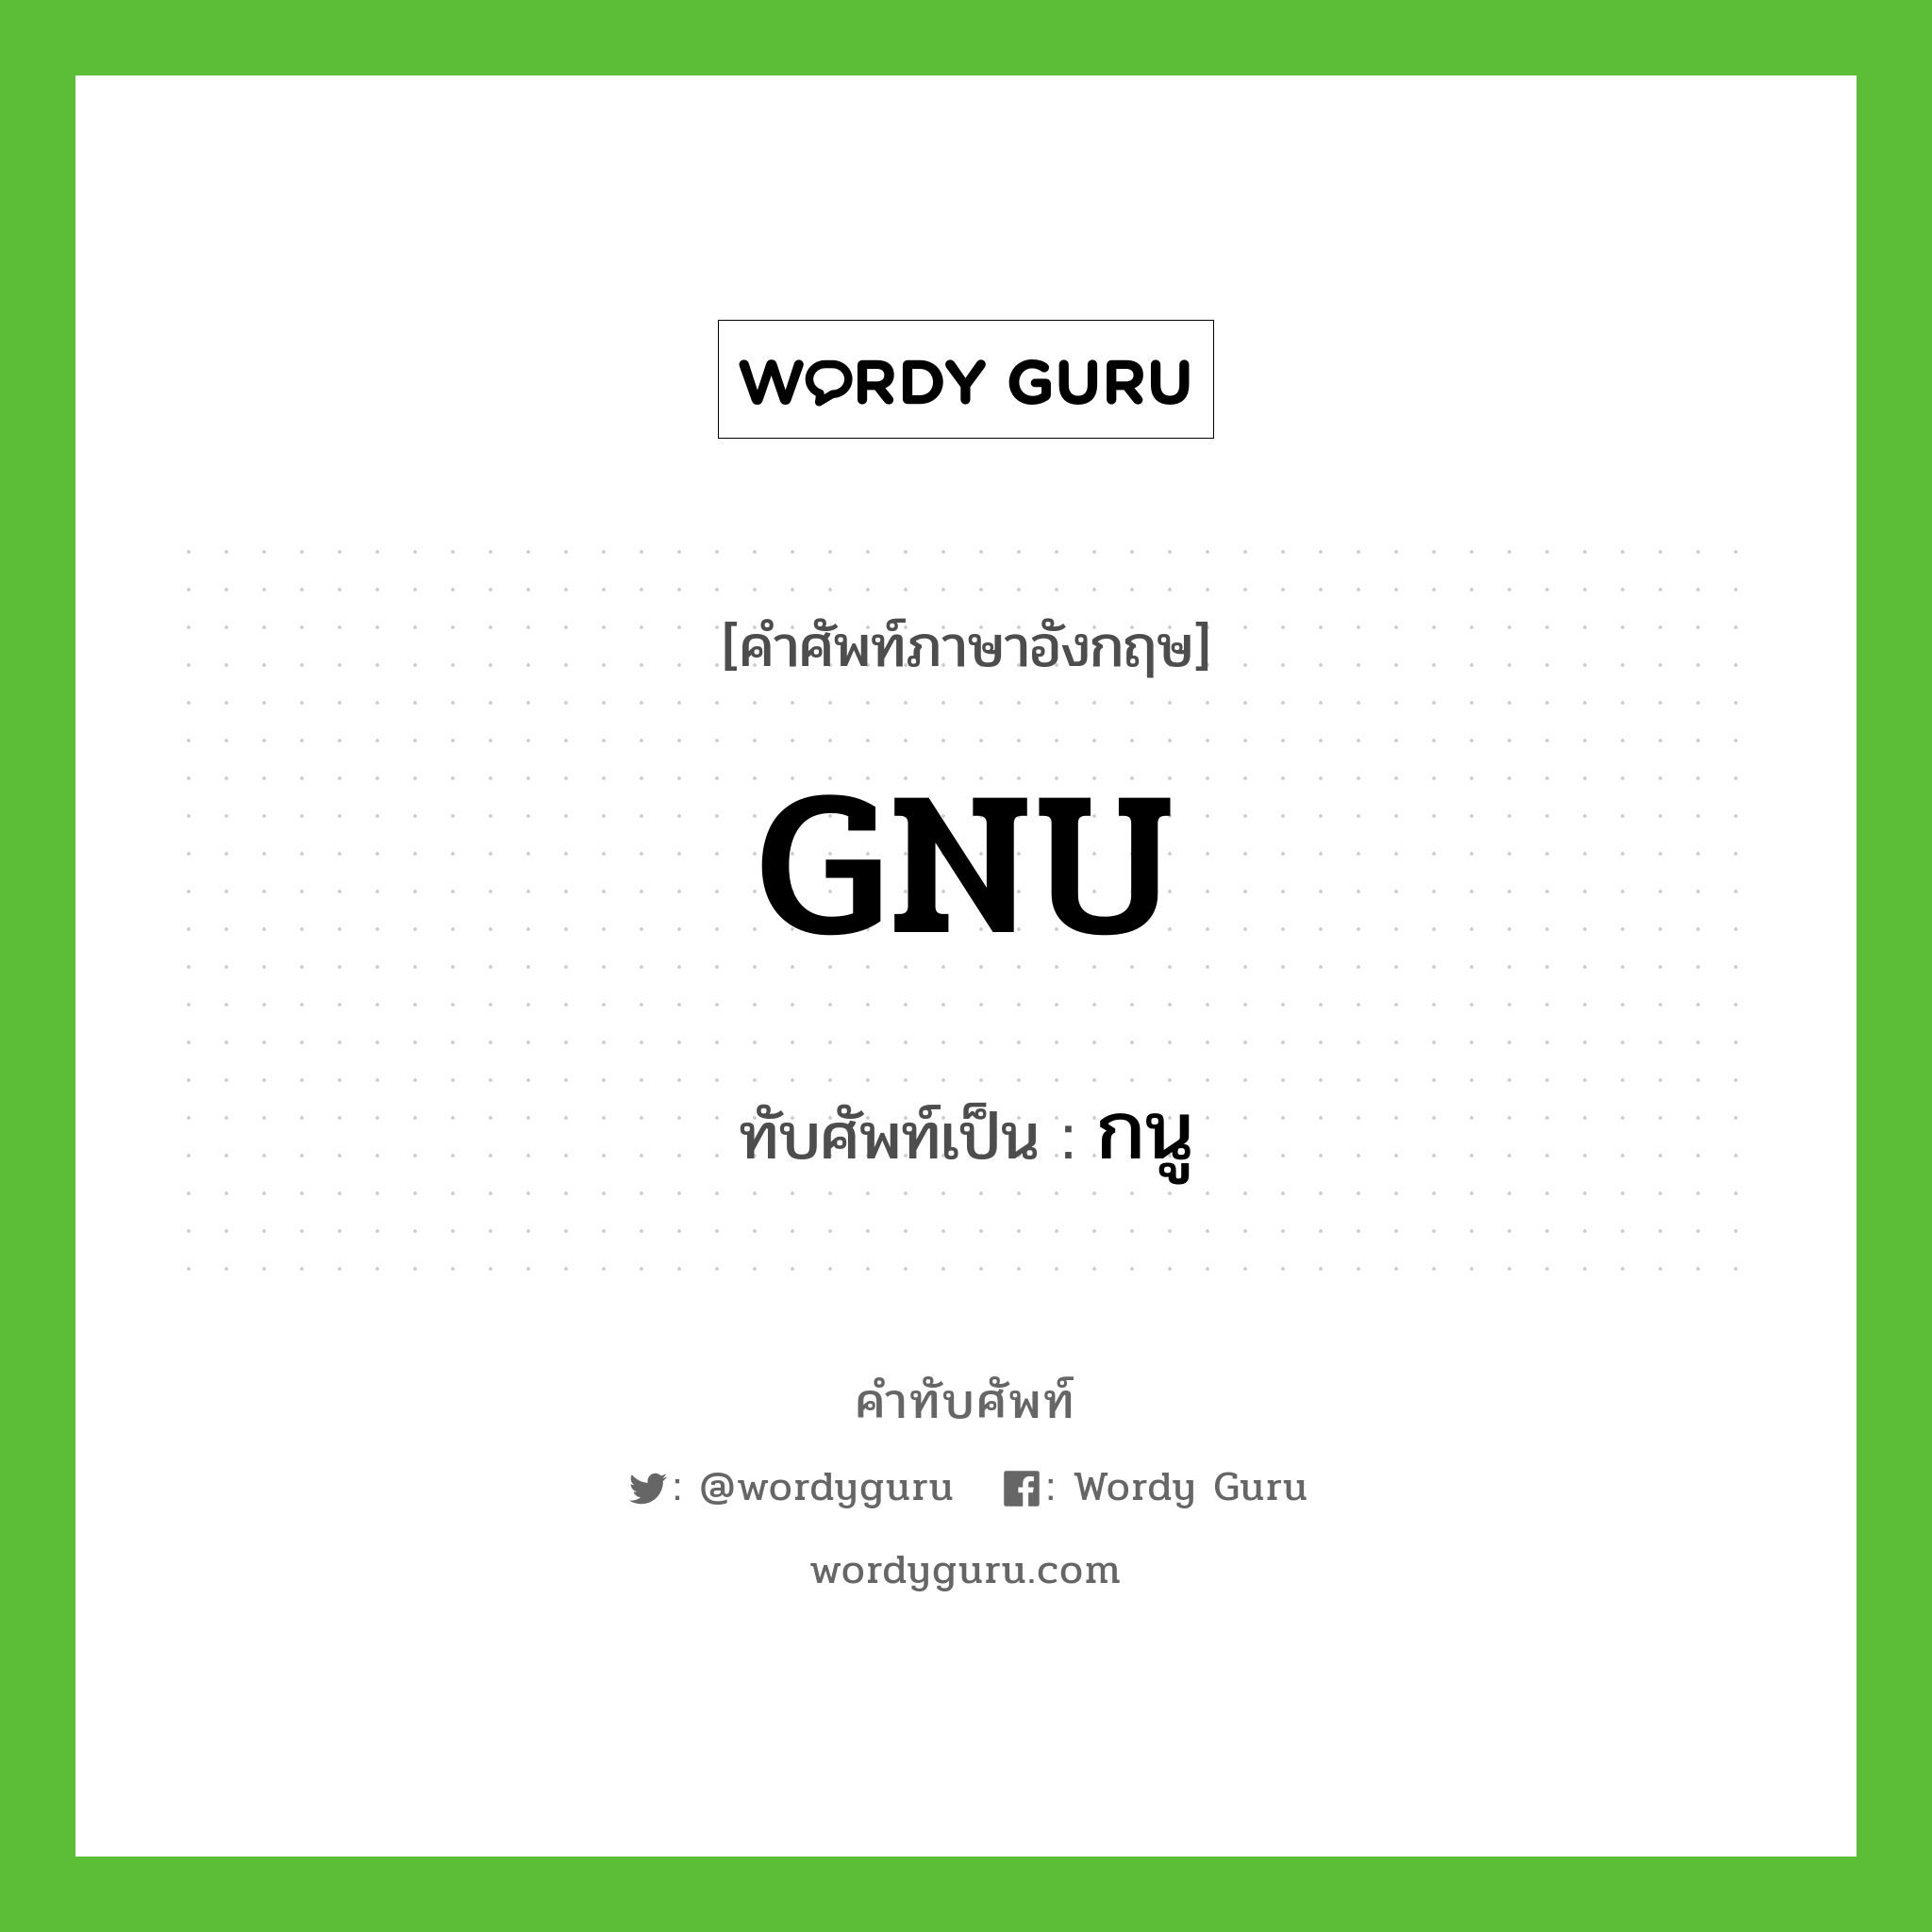 GNU เขียนเป็นคำไทยว่าอะไร?, คำศัพท์ภาษาอังกฤษ GNU ทับศัพท์เป็น กนู